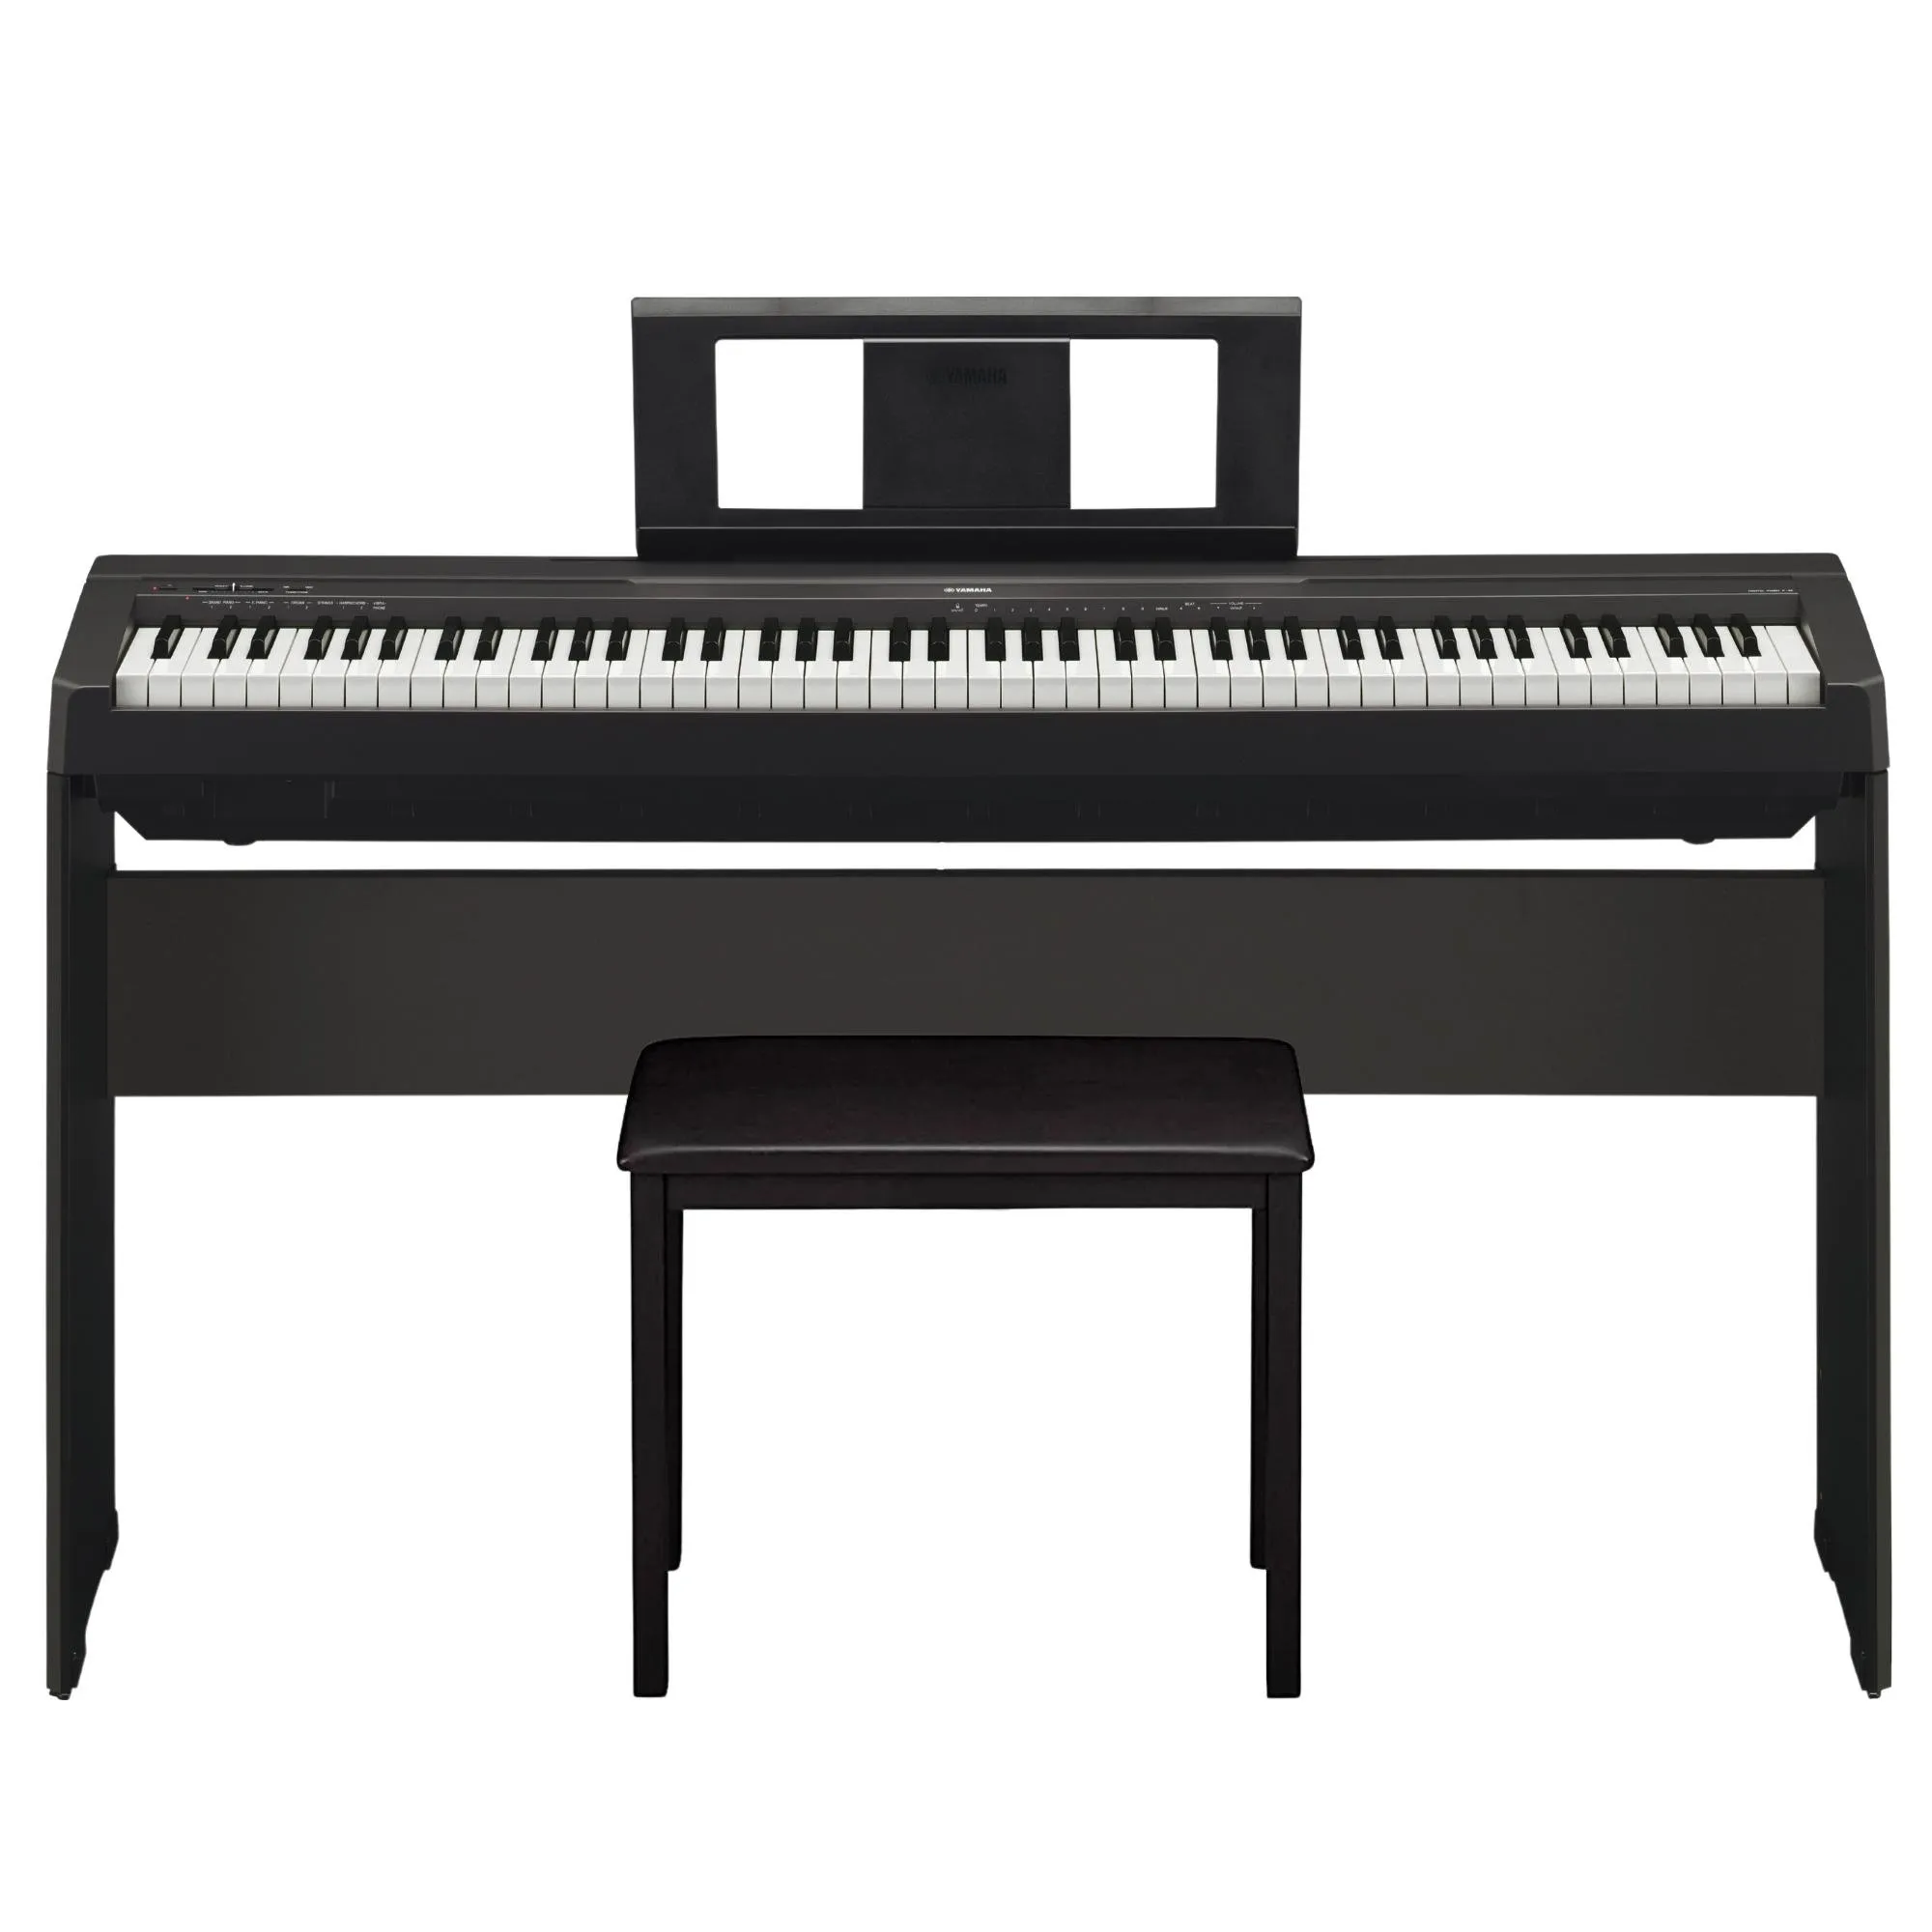 Kit Piano Digital YAMAHA P-45 Preto + Estante + Acessórios por 4.277,00 à vista no boleto/pix ou parcele em até 12x sem juros. Compre na loja Mundomax!